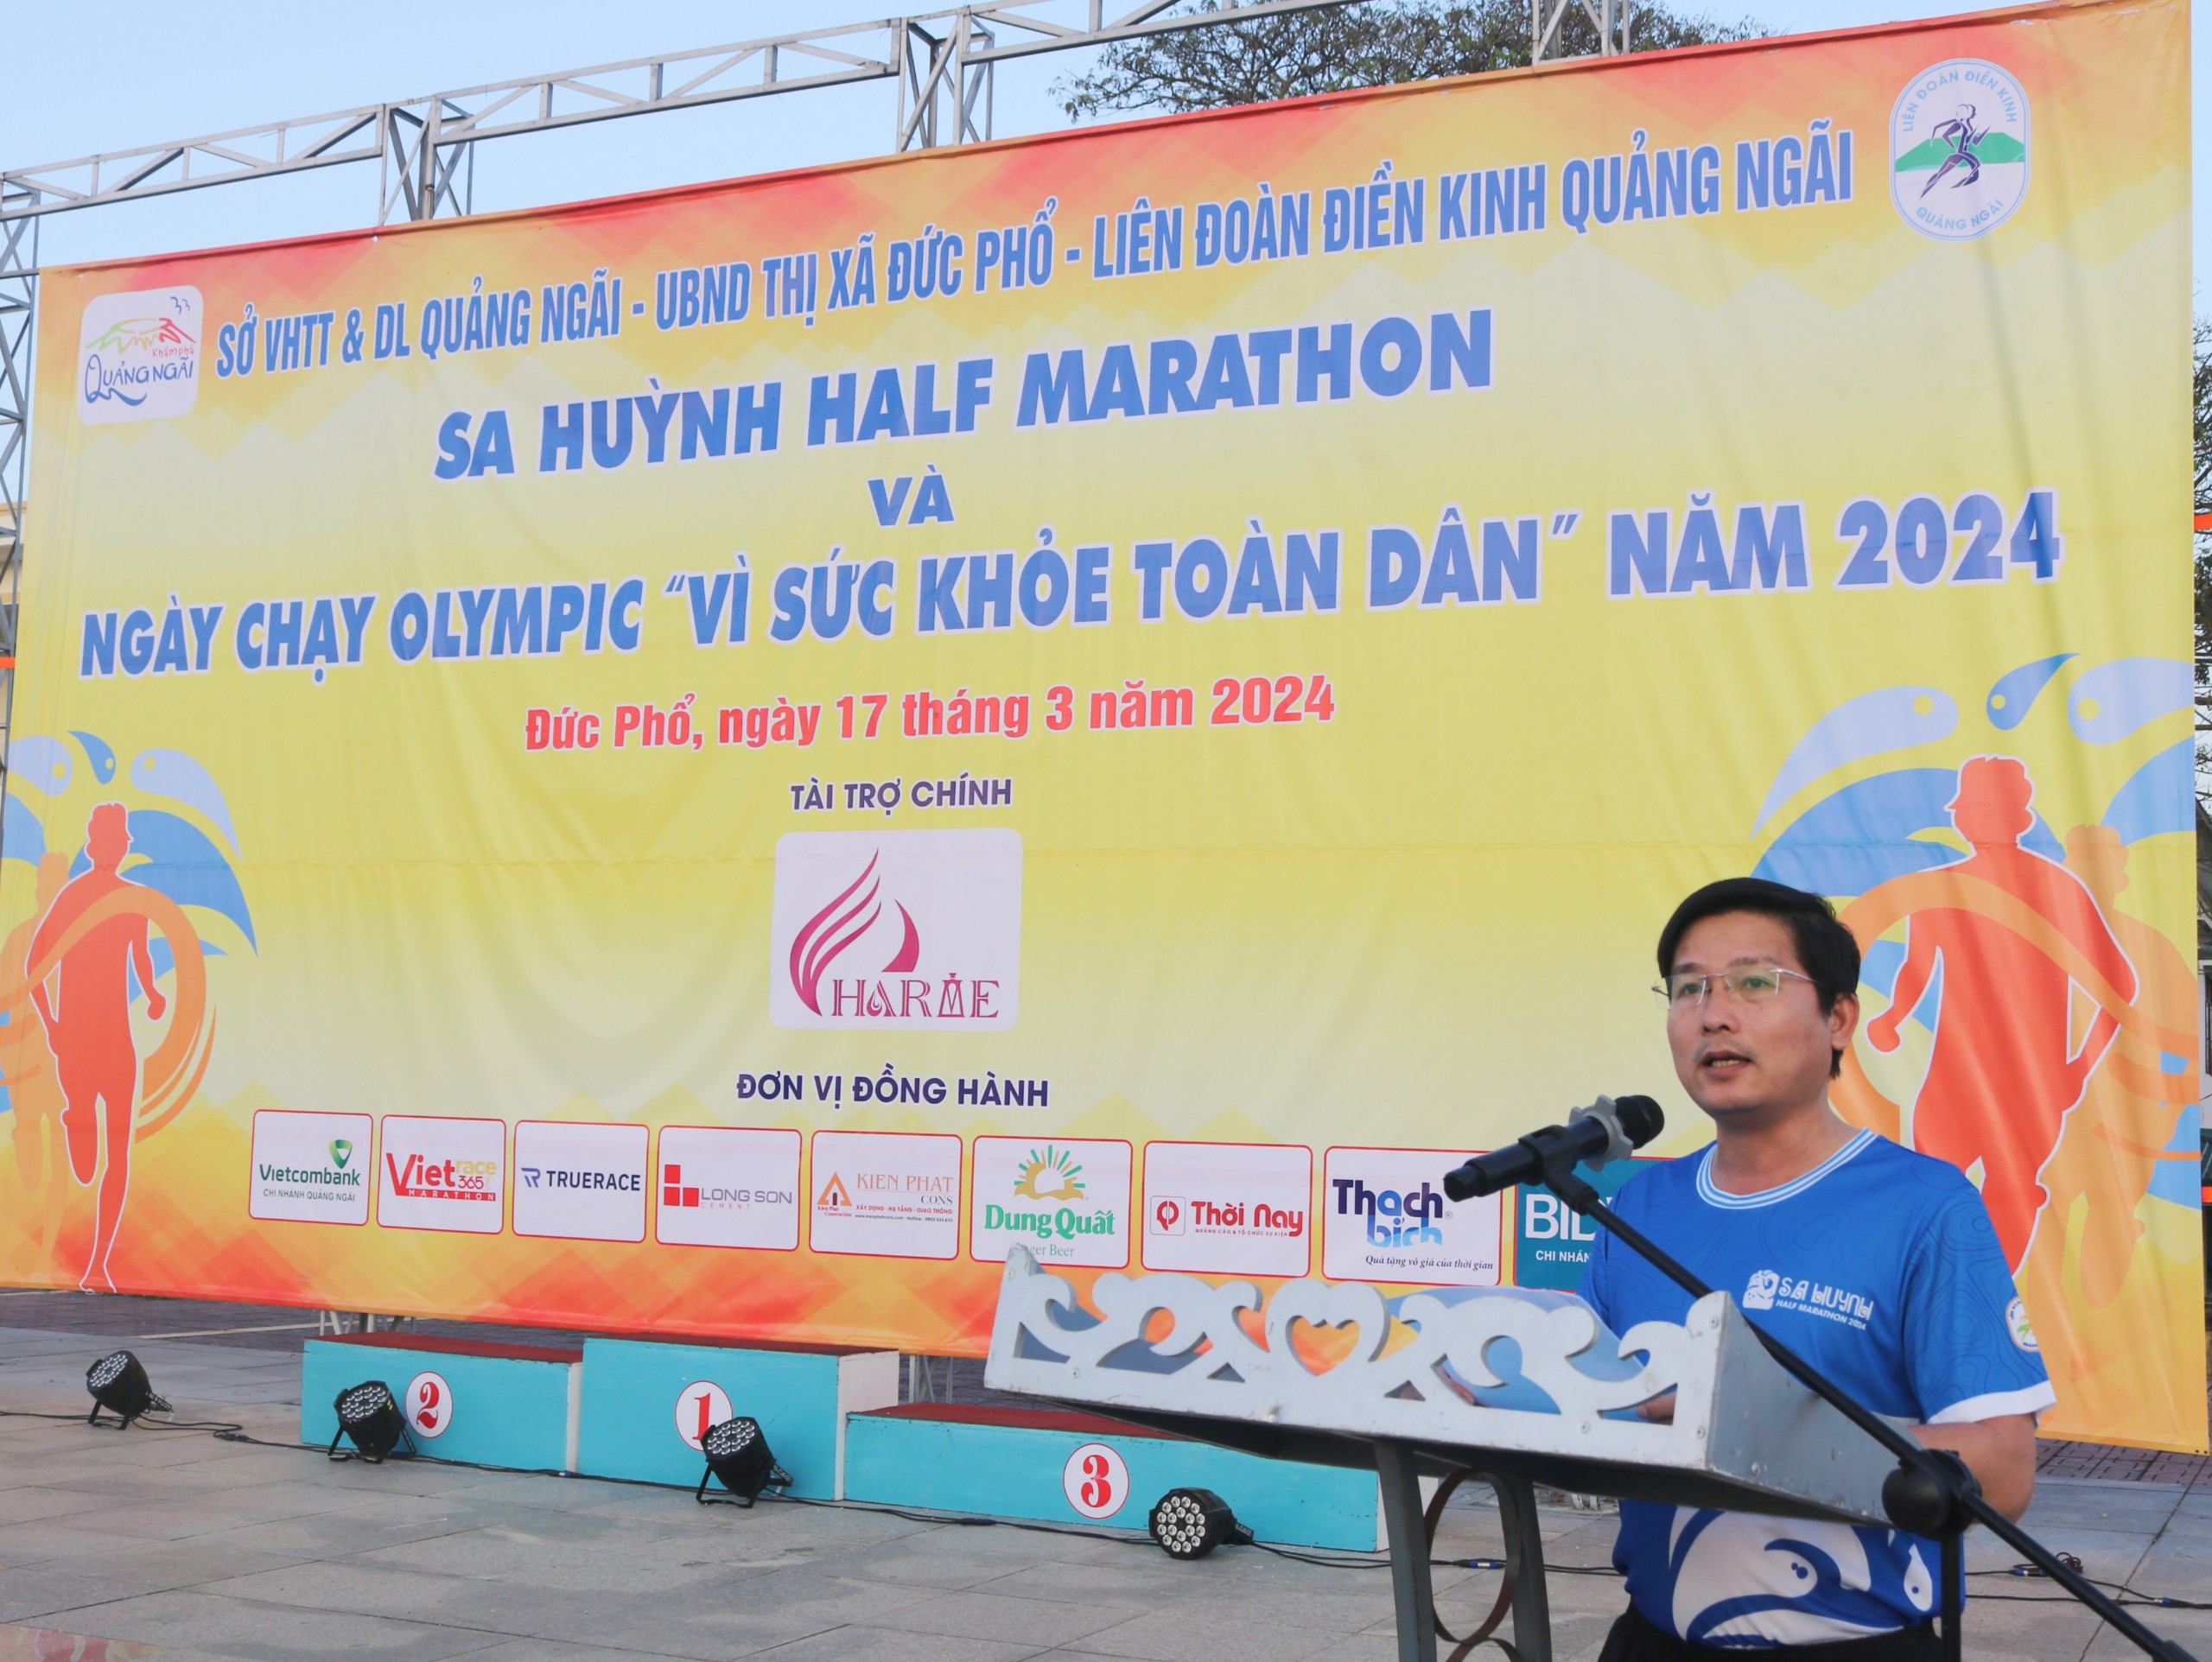 Giải Sa Huỳnh Half Marathon và Ngày chạy Olympic “Vì sức khỏe toàn dân” năm 2024